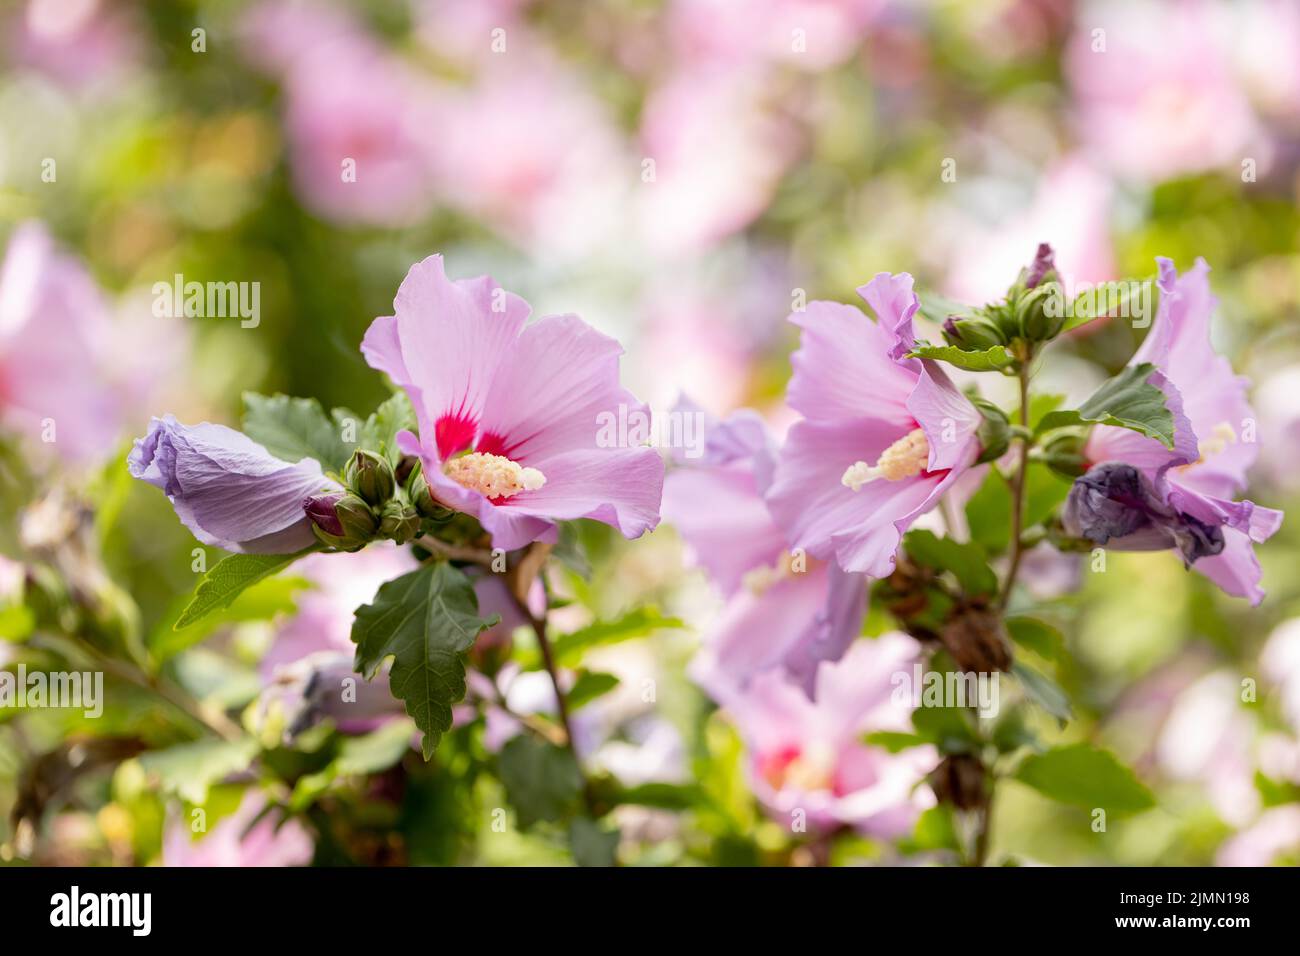 Hibiscus rose ou fleur de malow rose. Fleurs d'hibiscus Rosa Sinensis aux pétales rose crémeux et au centre bordeaux. Fleurs roses dans le jardin Banque D'Images